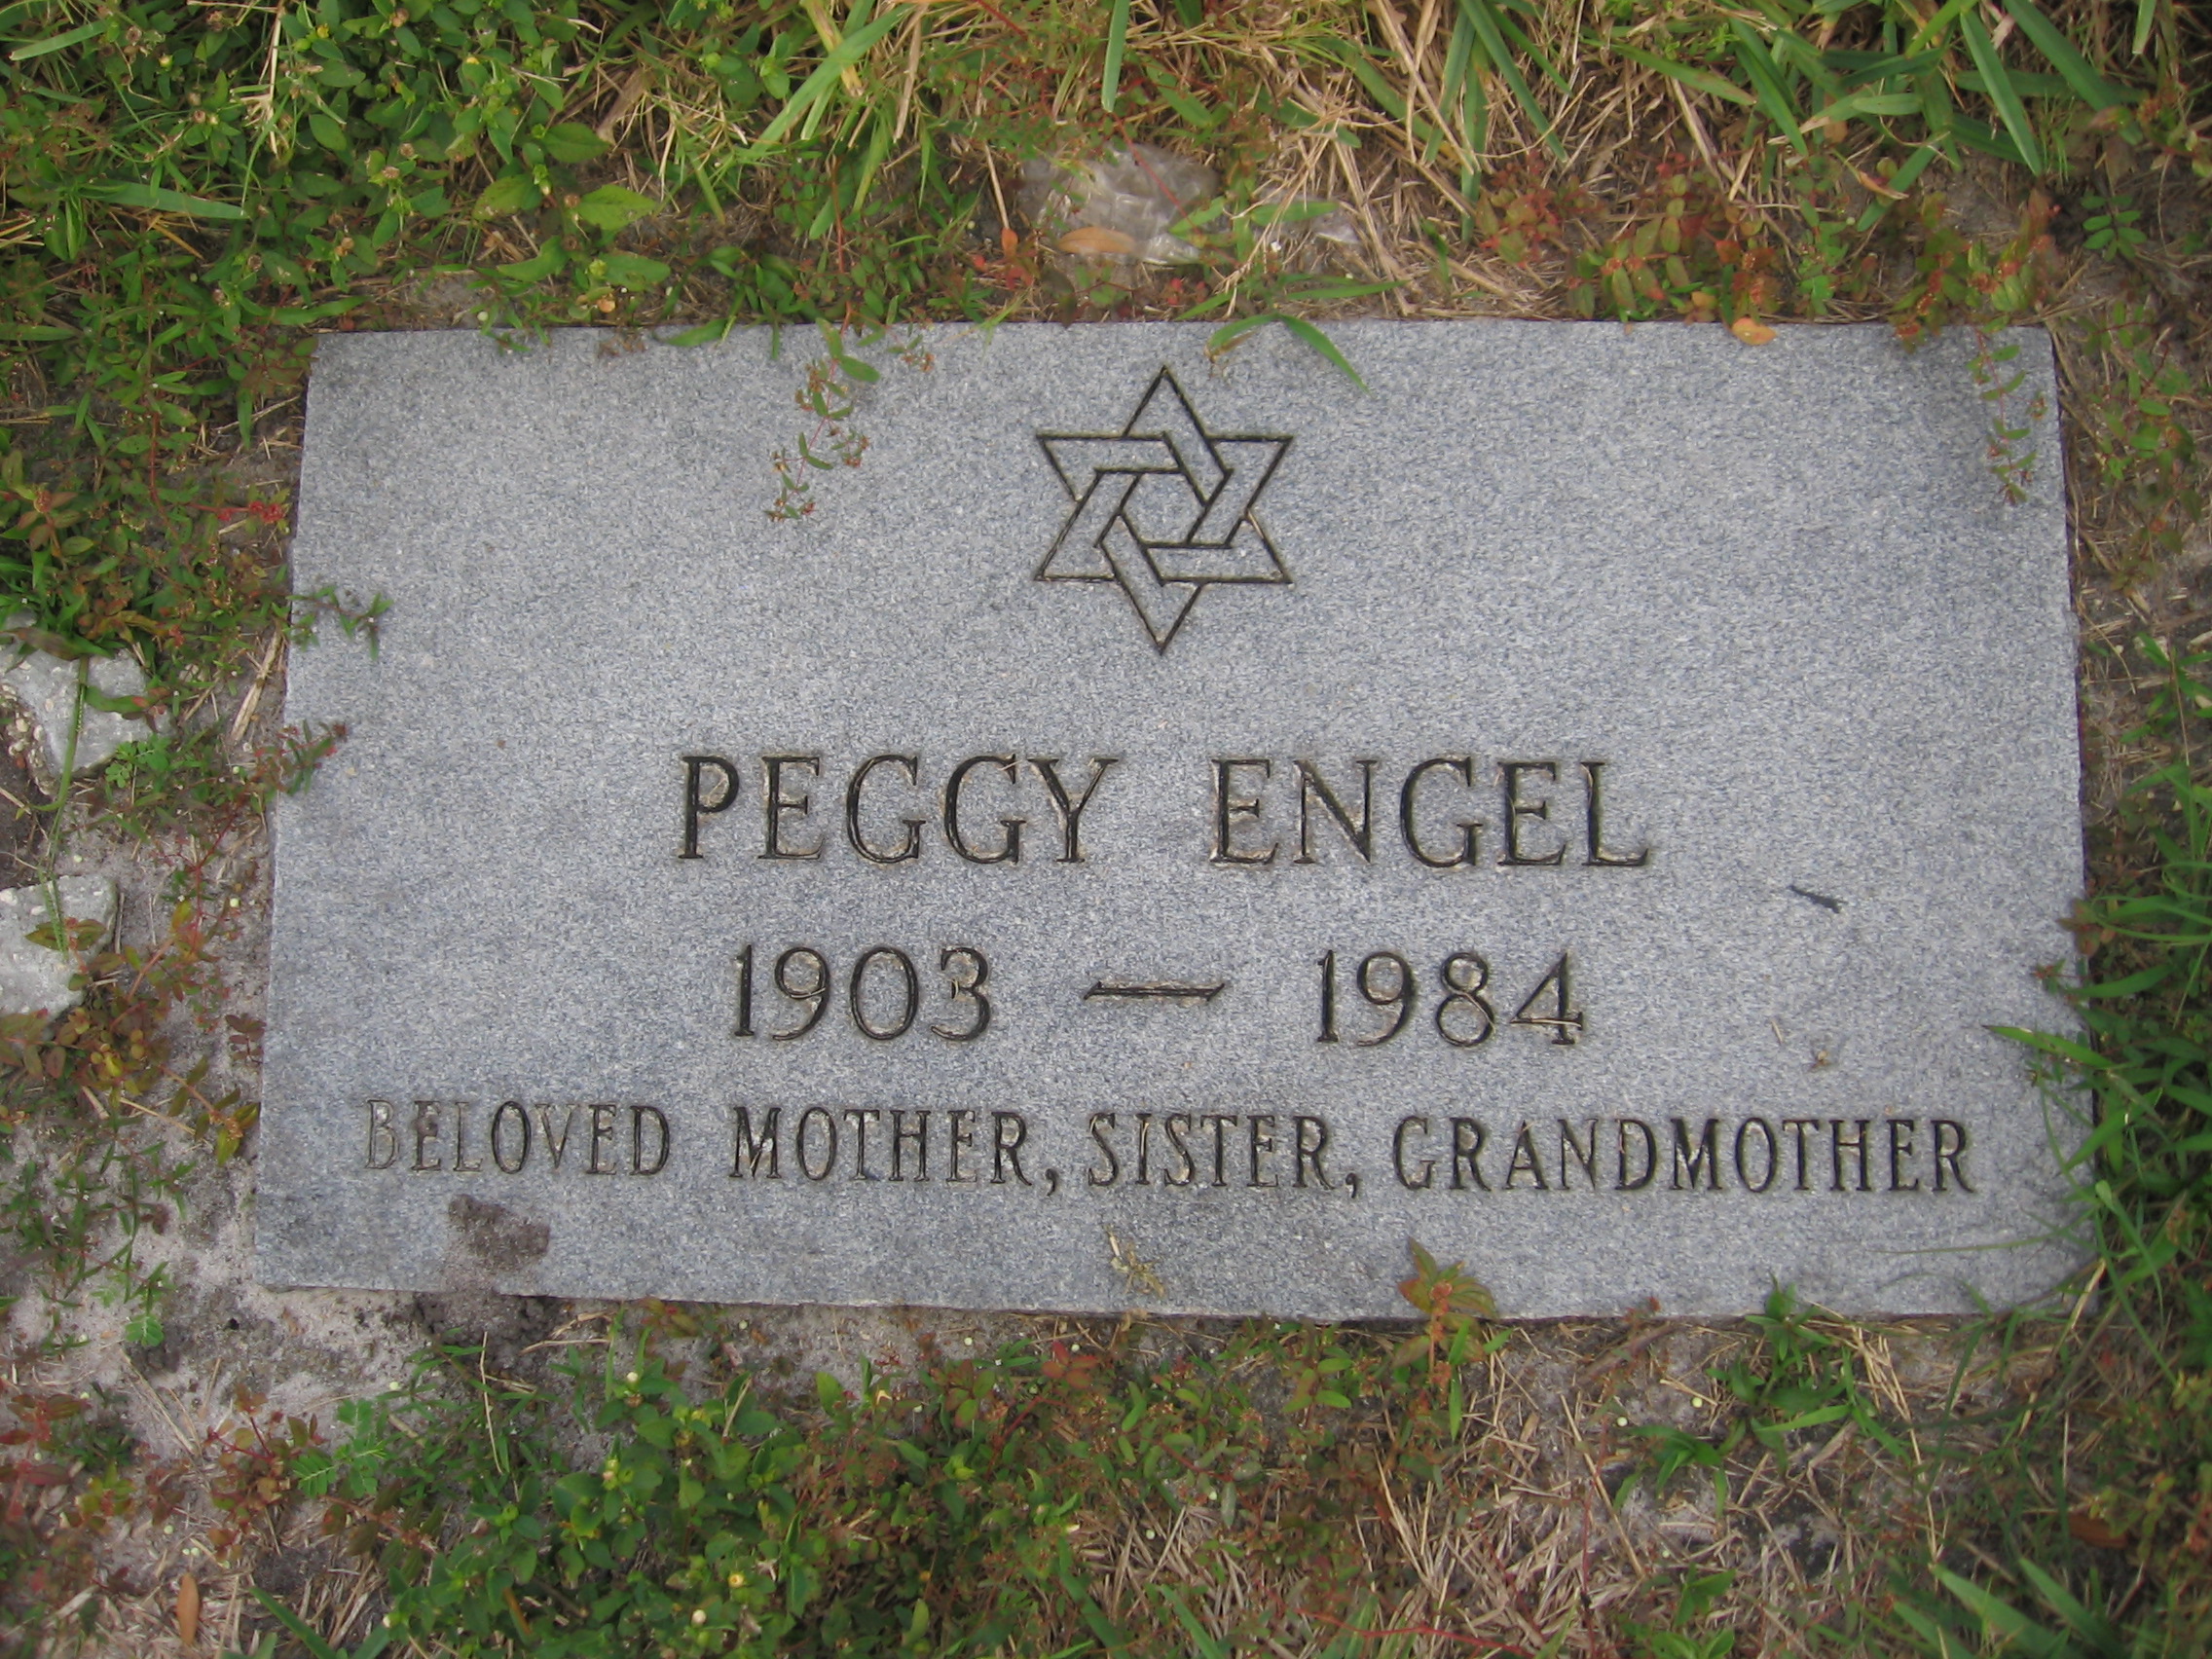 Peggy Engel